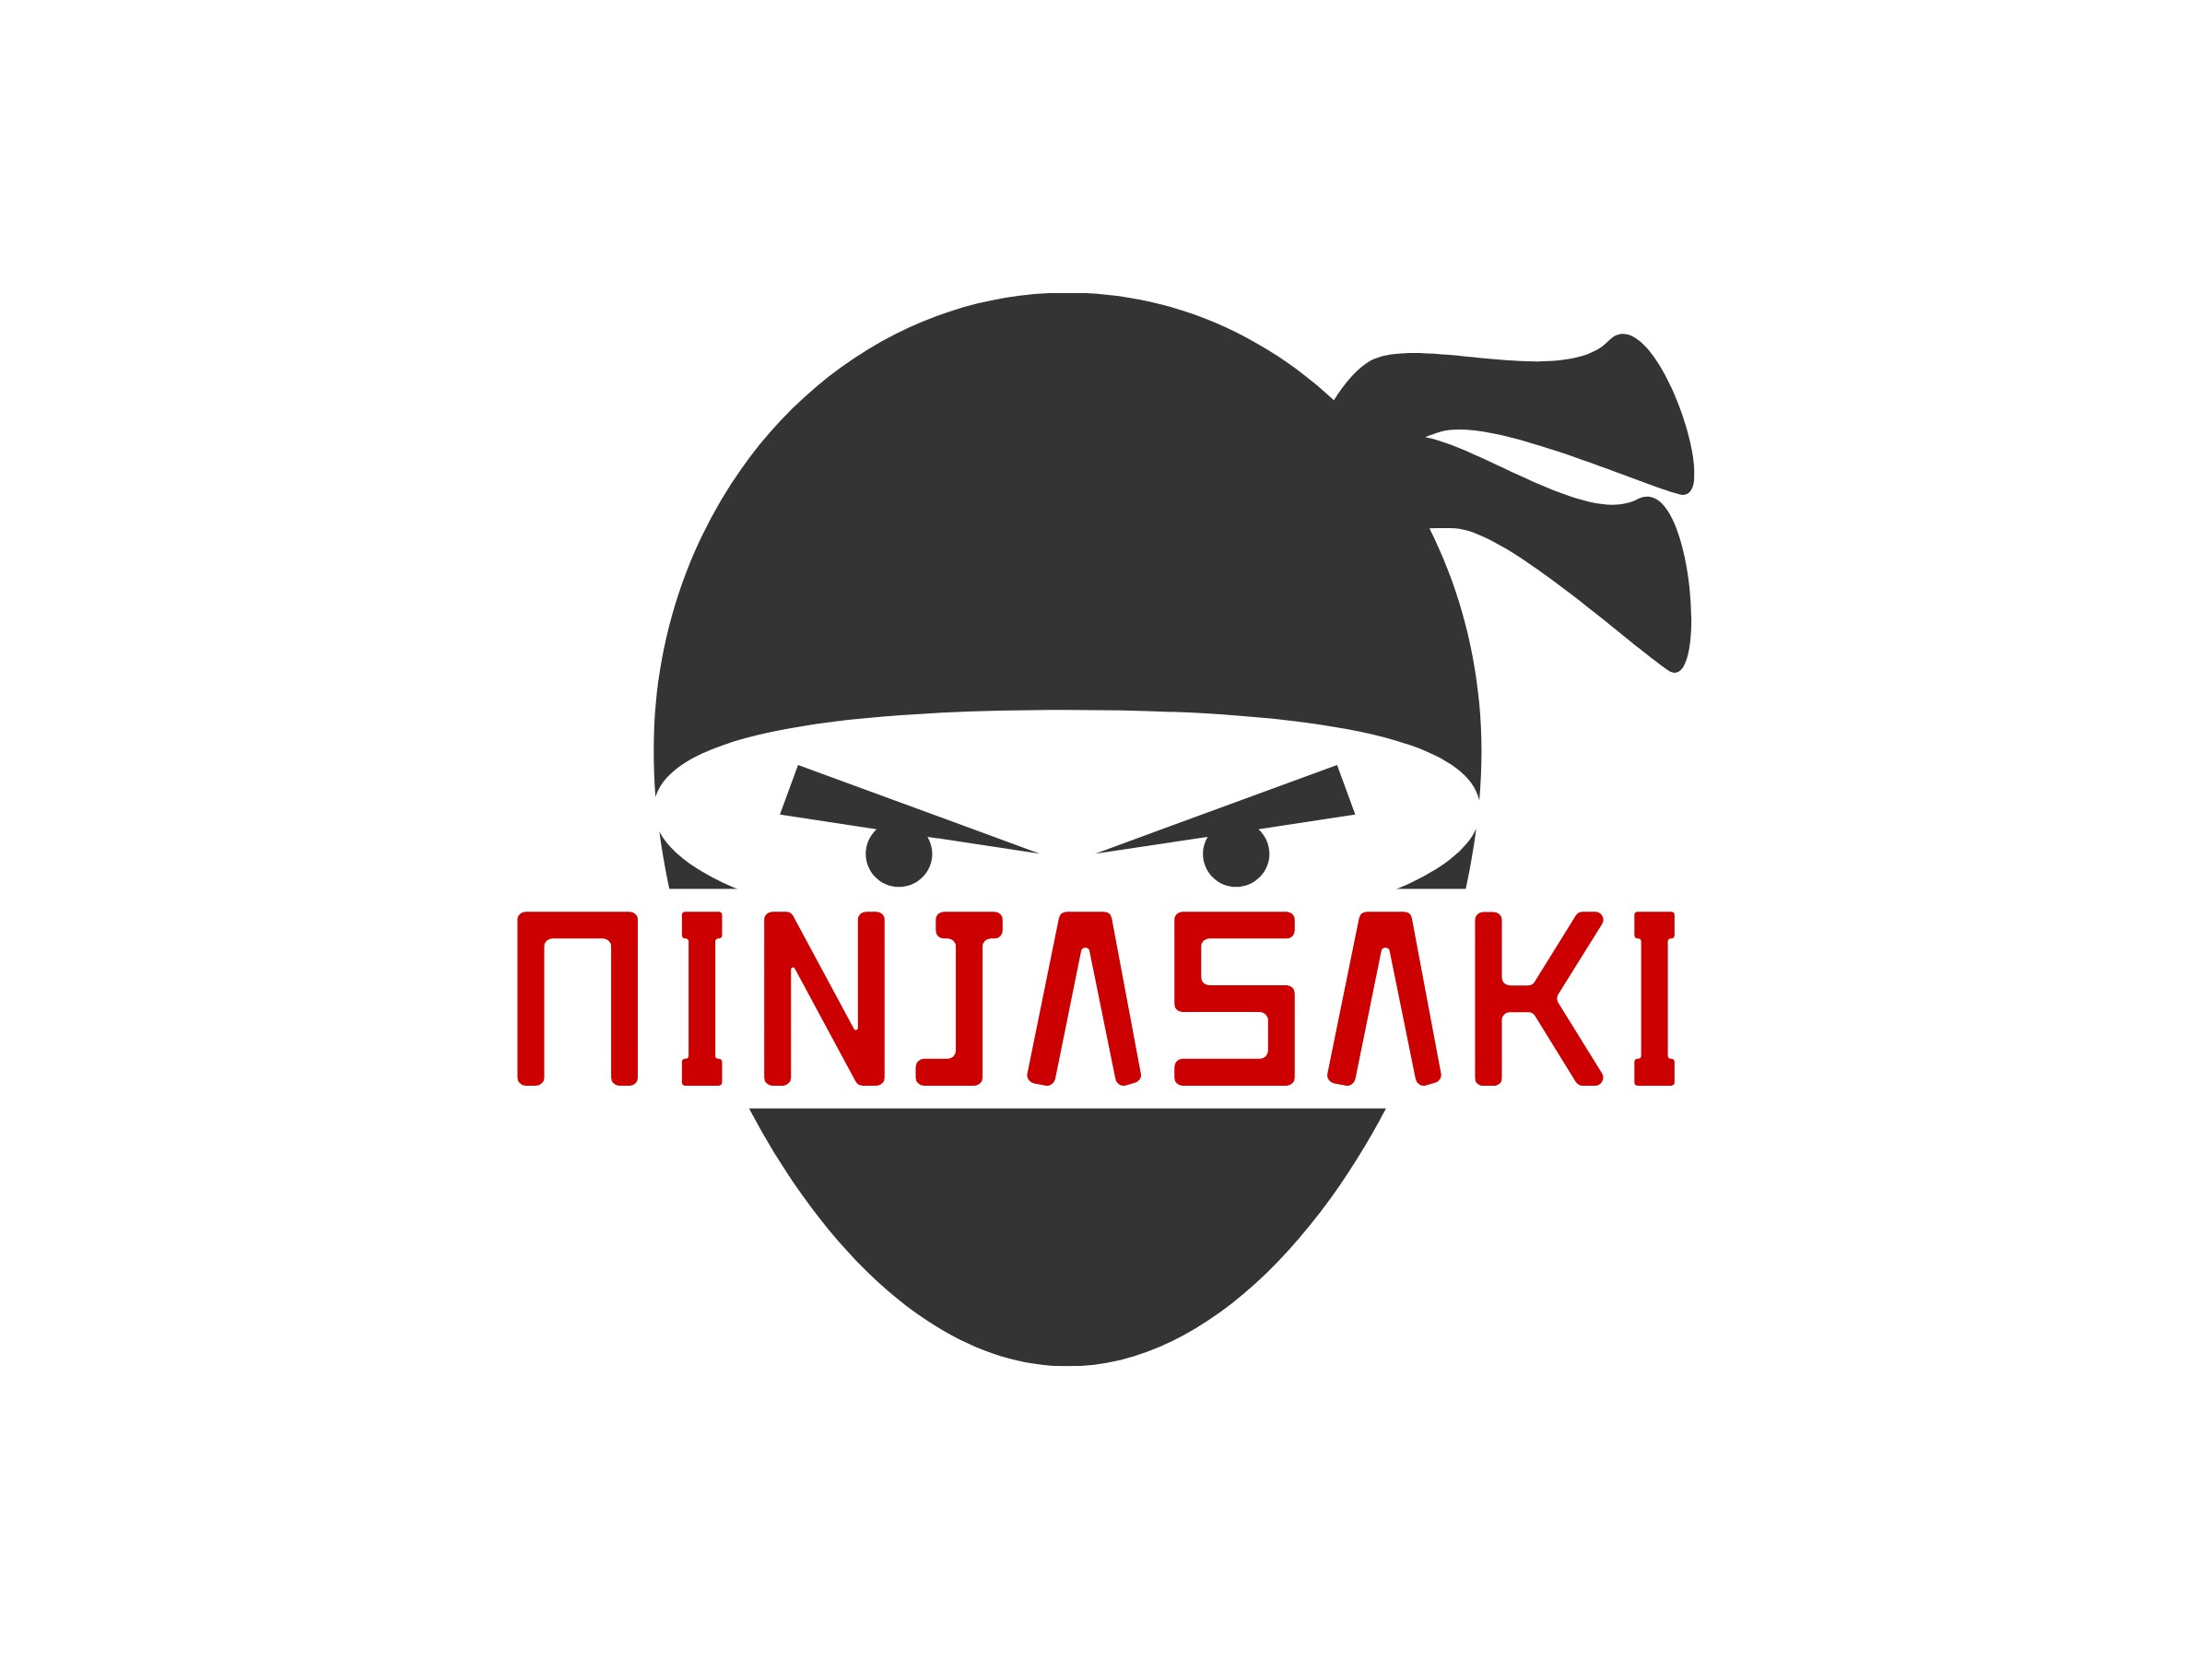 Ninjasaki - 